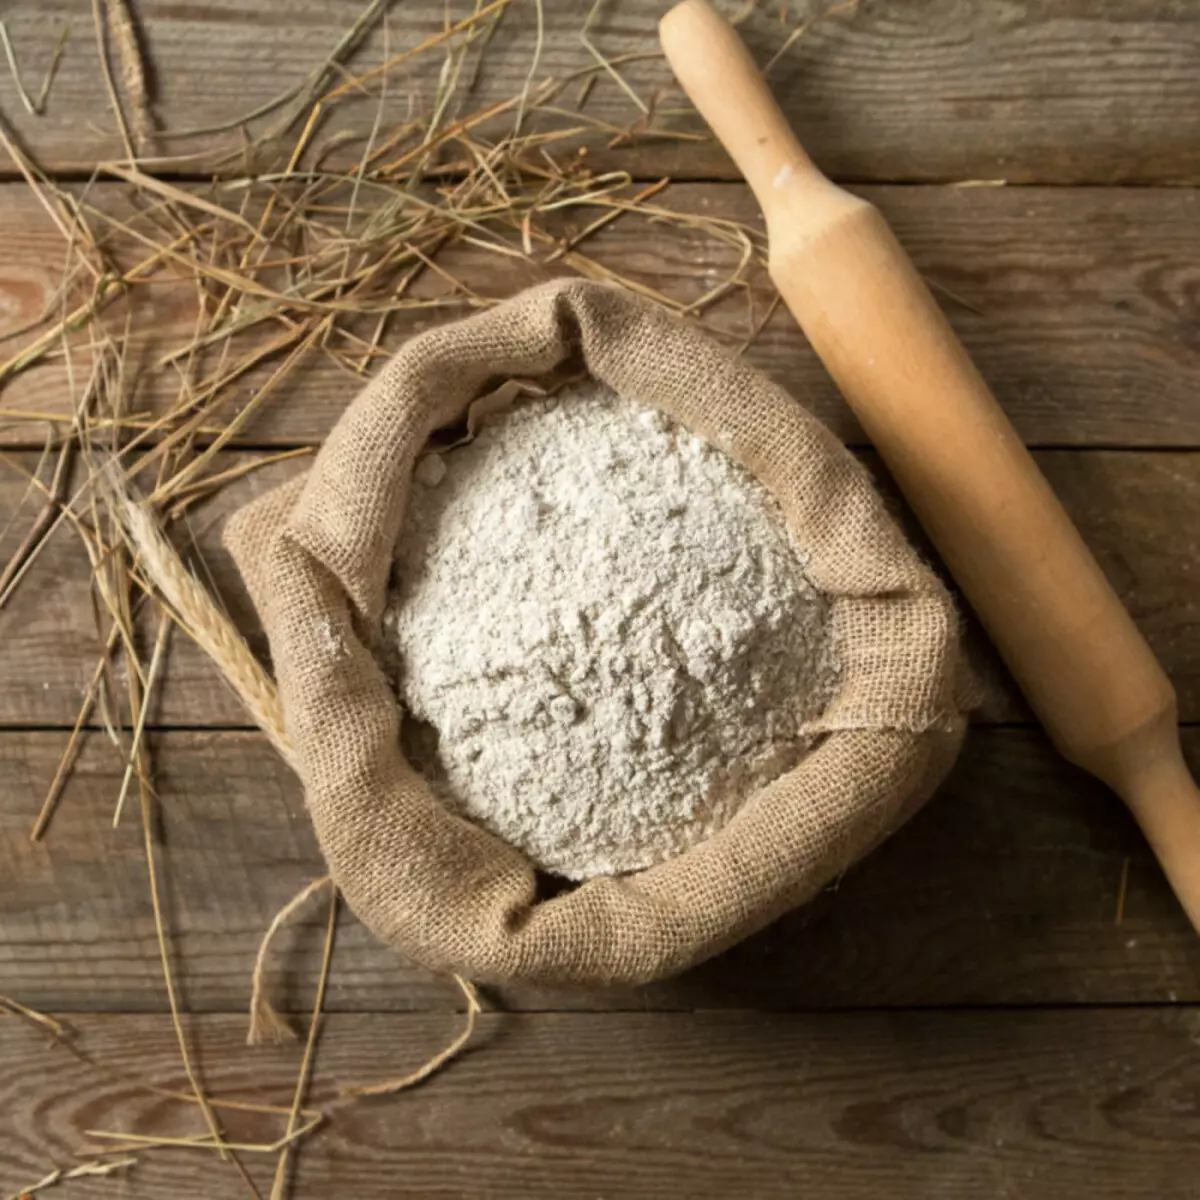 工藝品的鹽漬荷蘭人配方（30張）：如何用樹膠粉地粉在家中製作它？如何烹飪麵團用於建模不同的工藝品？構成和比例 26138_15